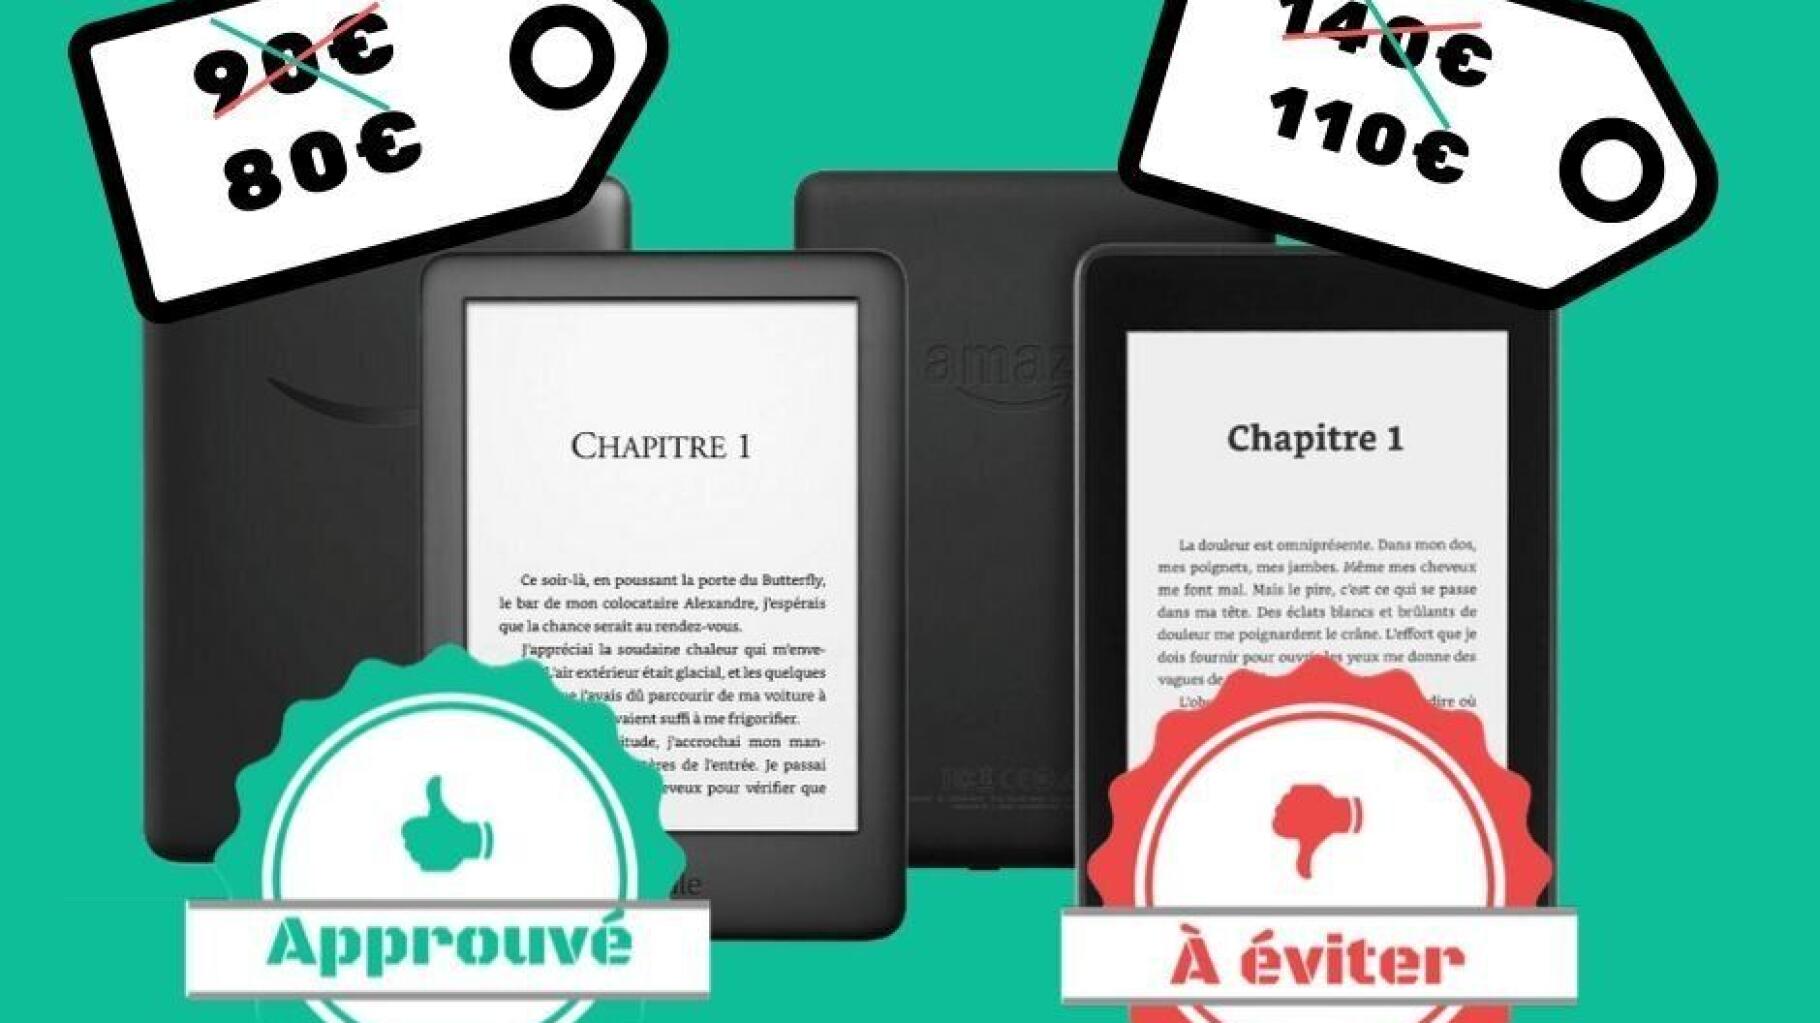 Les Kindle en promo dès 80 euros, on valide ou pas?